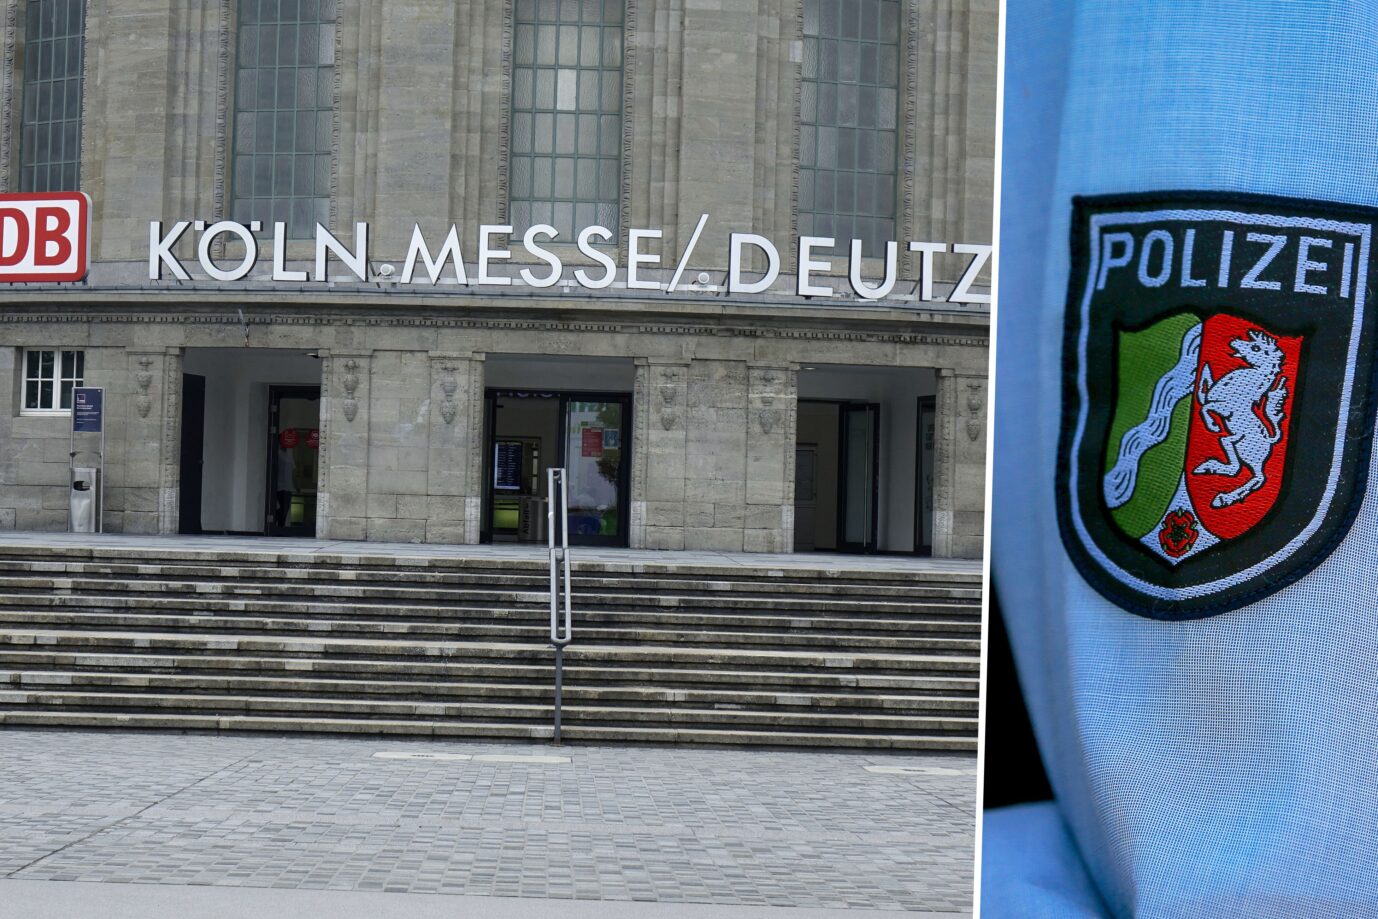 Das Bild ist eine Montage aus zwei Fotos. Links zu sehen ist der Bahnhof Köln Messe/Deutz. Rechts im Bild ist eine Polizeiuniform aus Nordrhein-Westfalen. Die Bundespolizei hat am Samstag zwei junge algerische Taschendiebe dort aufgegriffen.